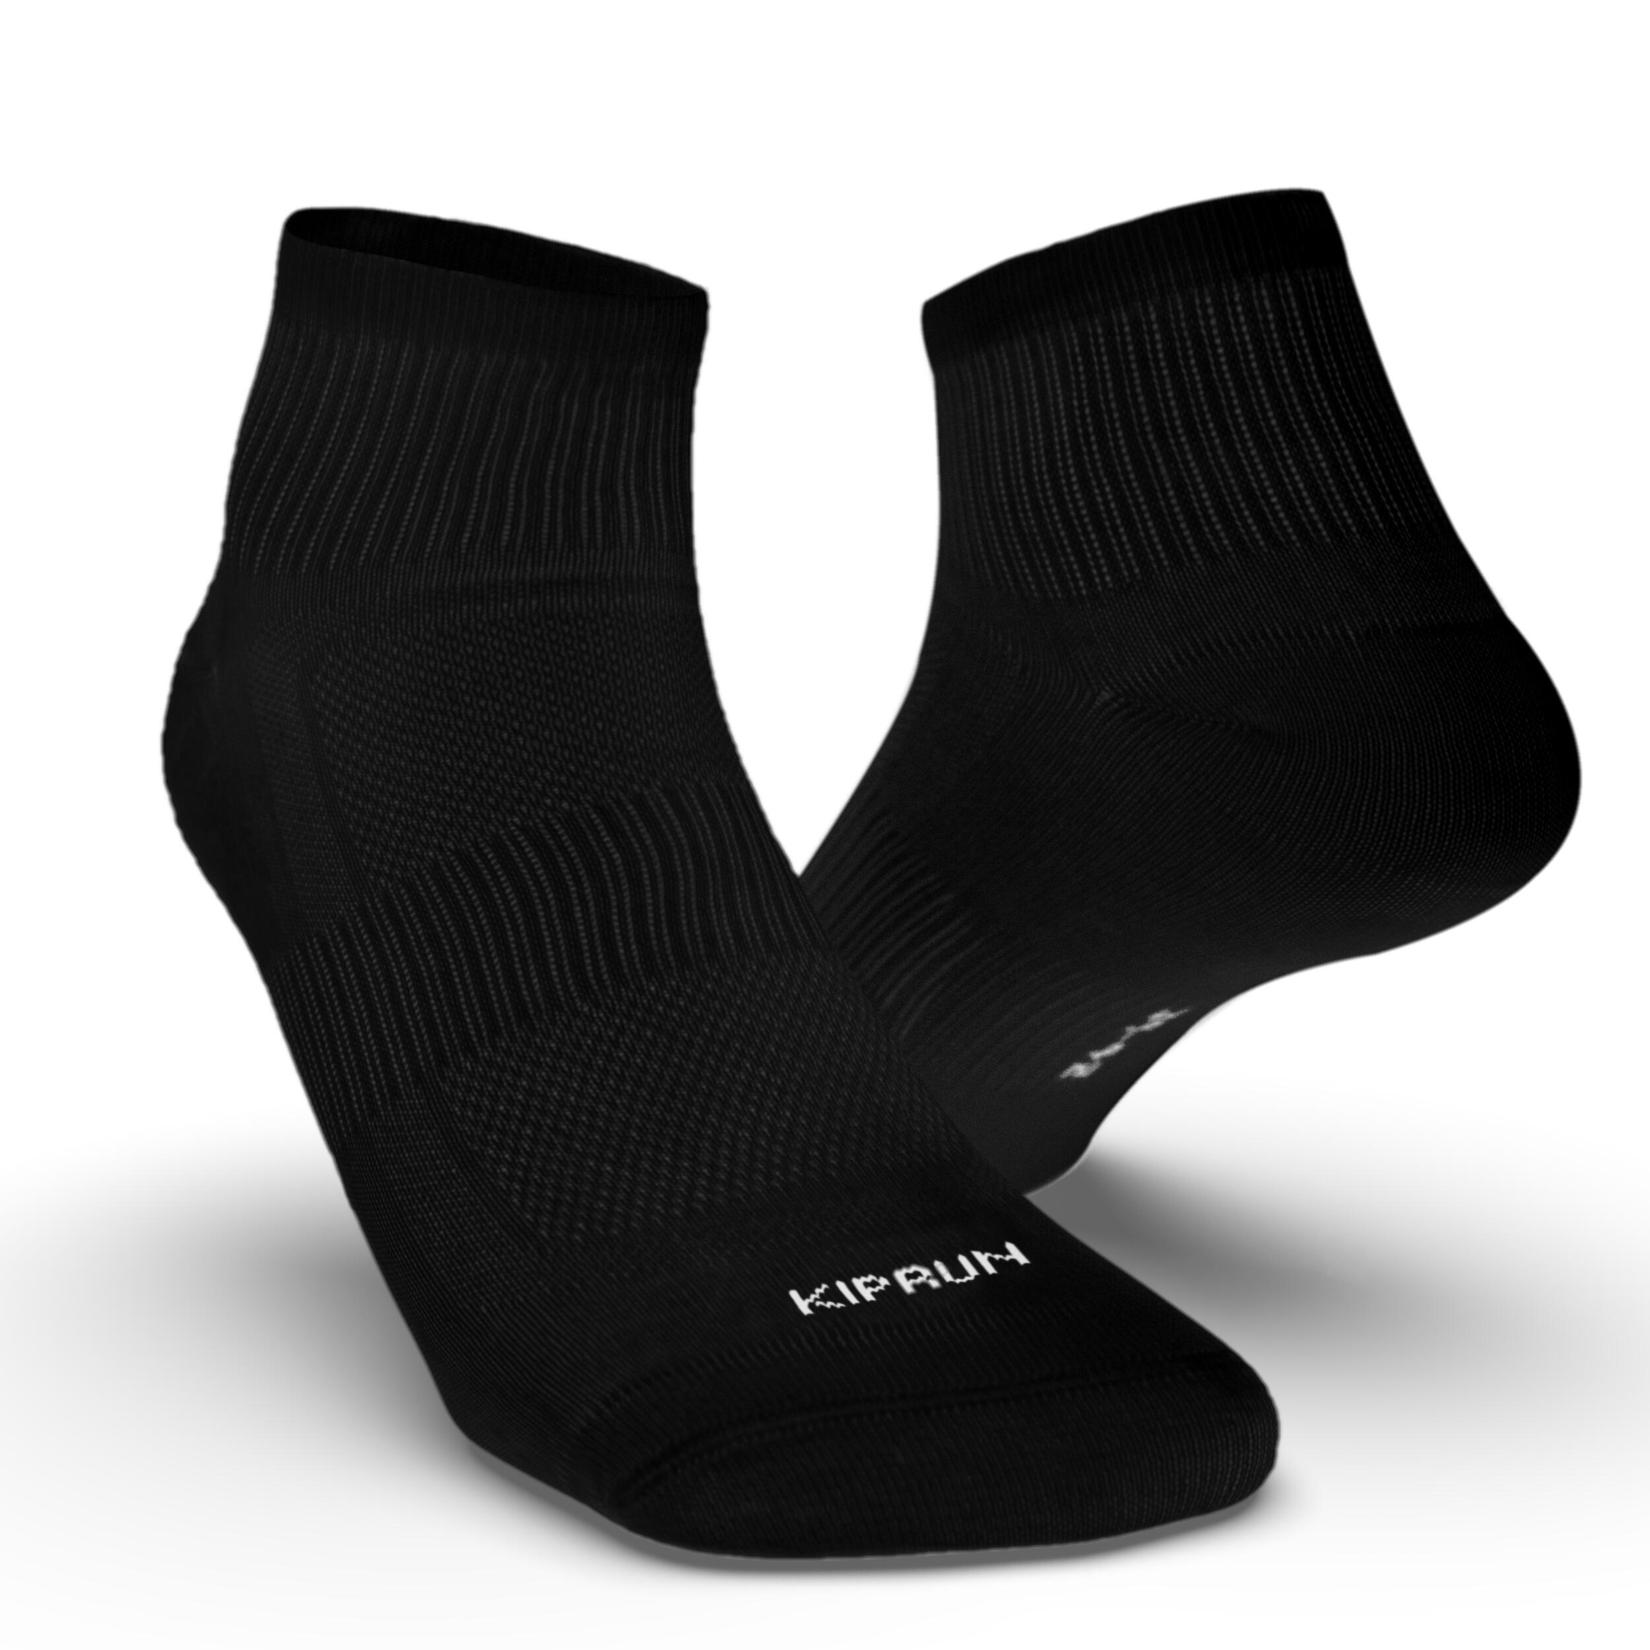 Running Socks Run 100 3-Pack - black offers at R 99 in Decathlon